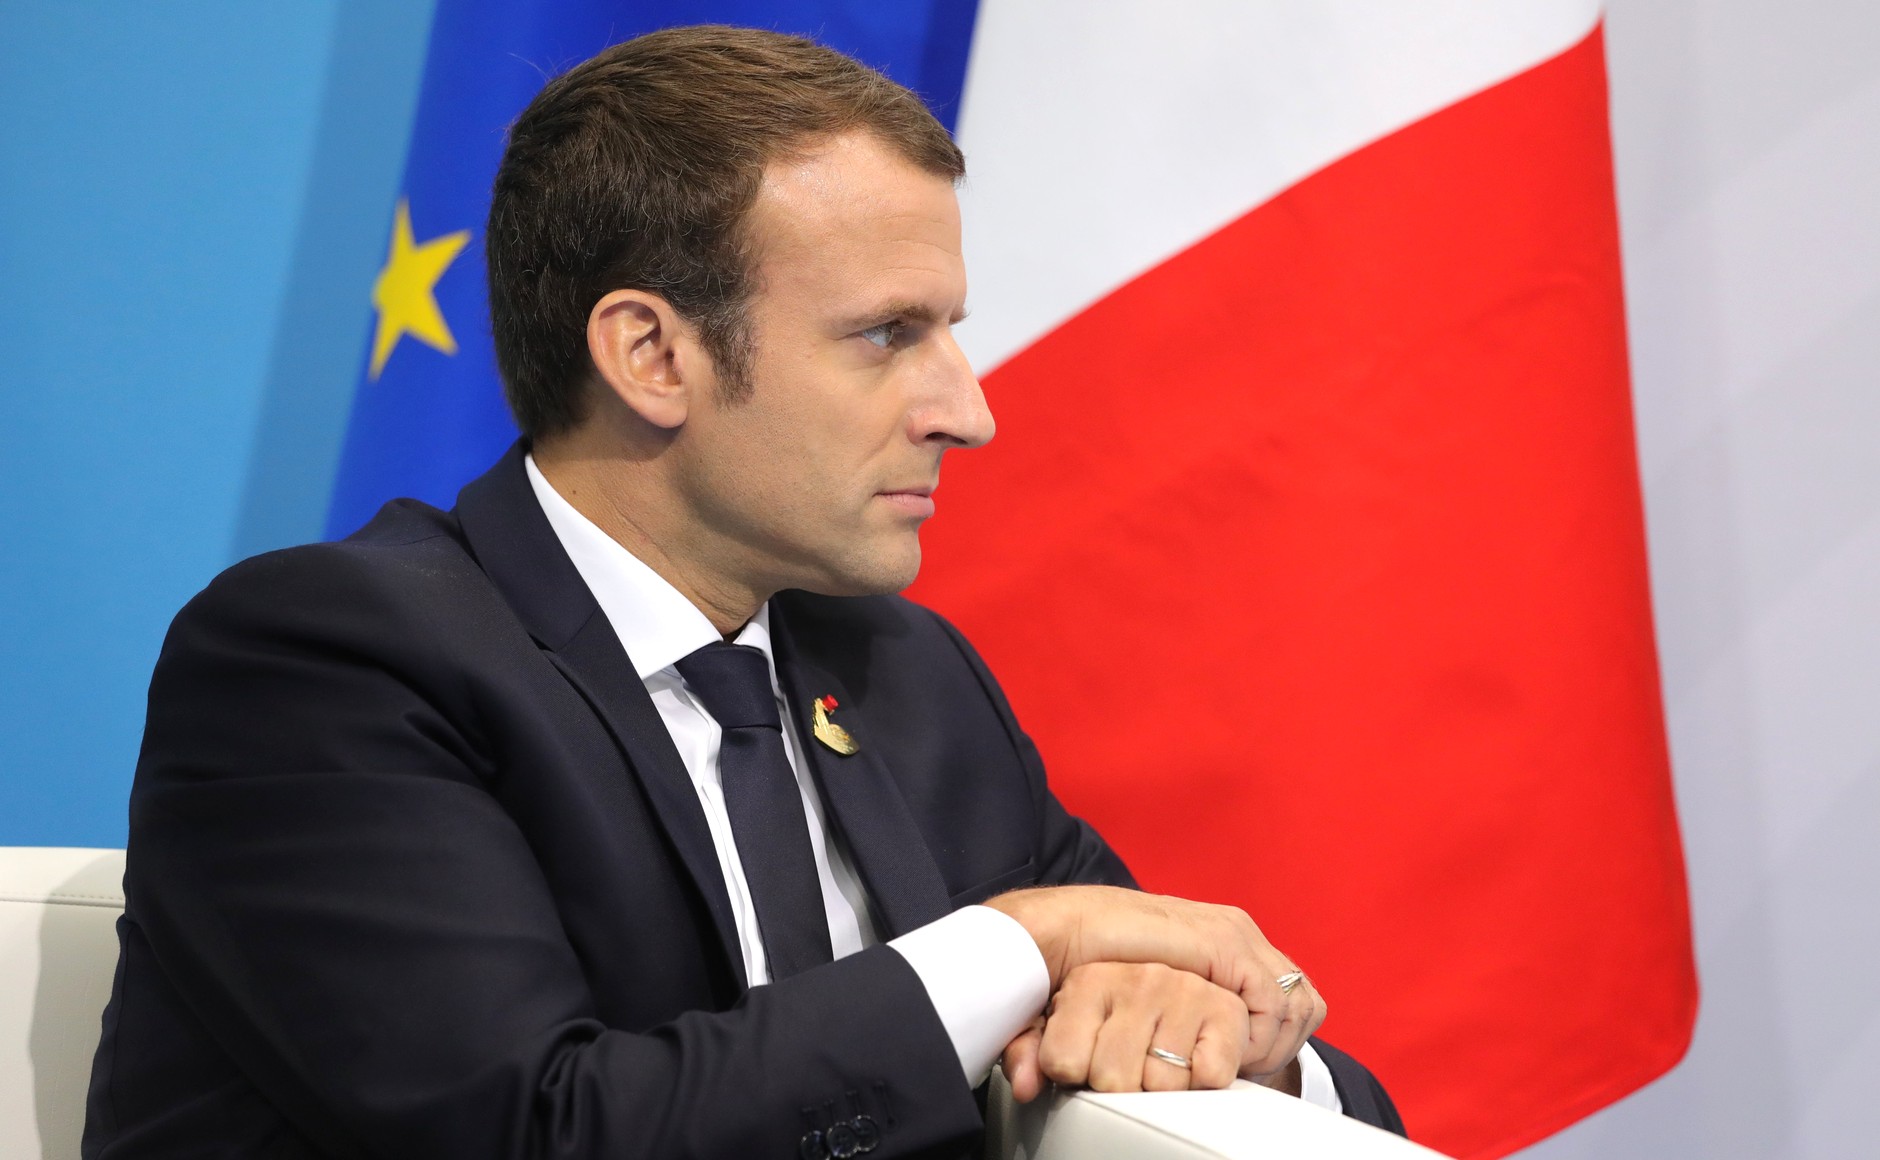 Le président français Emmanuel Macron a prononcé un discours devant le Parlement européen de Strasbourg, mardi